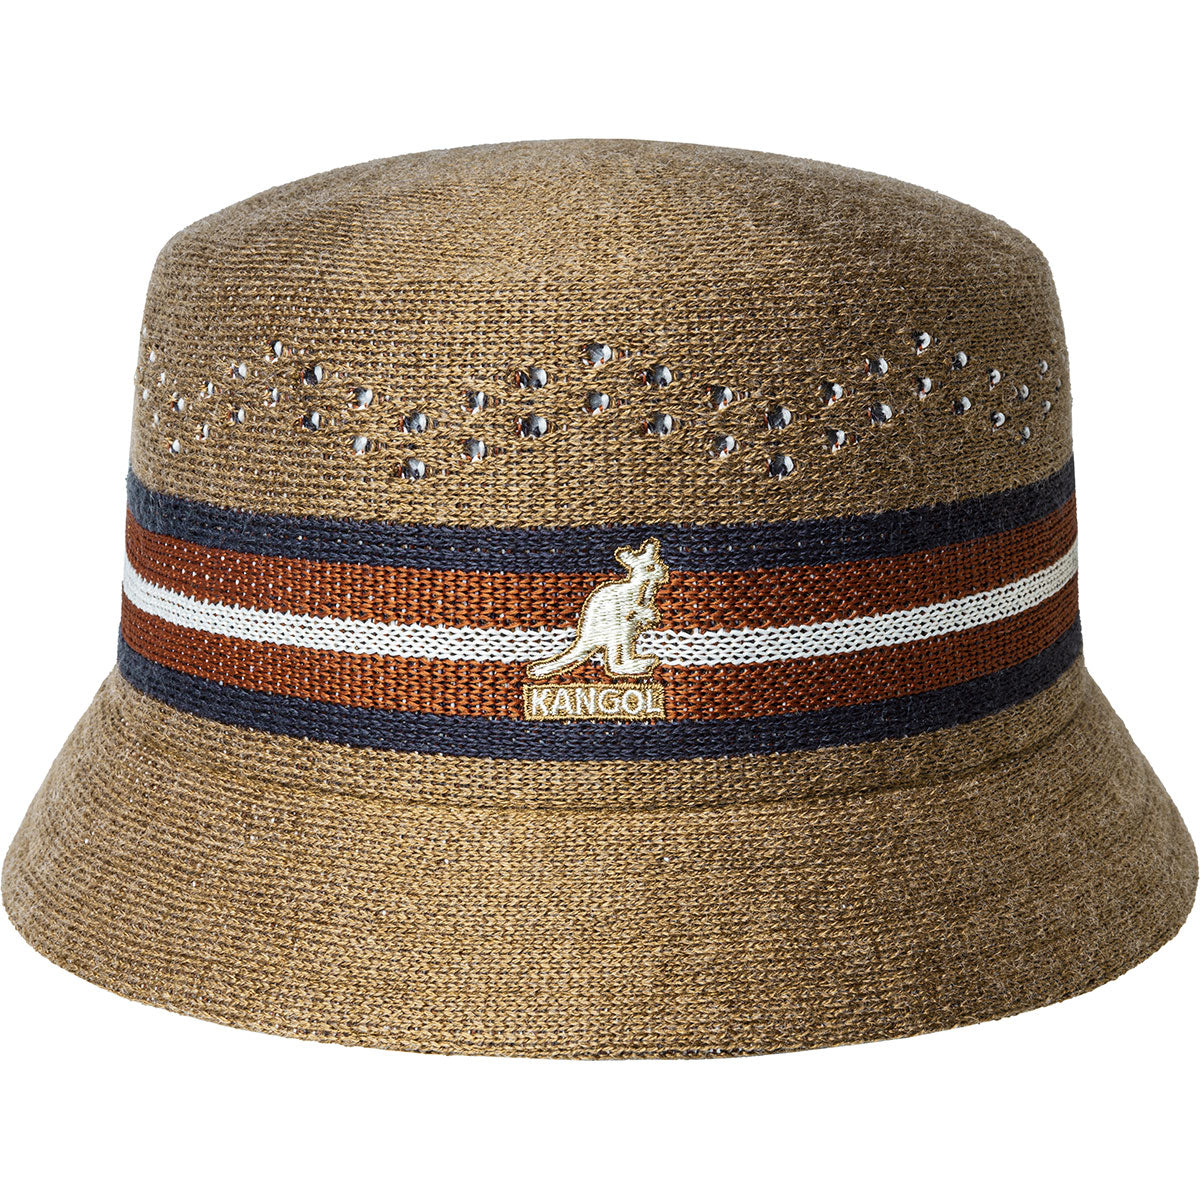 Kangol Slick Stipe Bin Bucket Hat